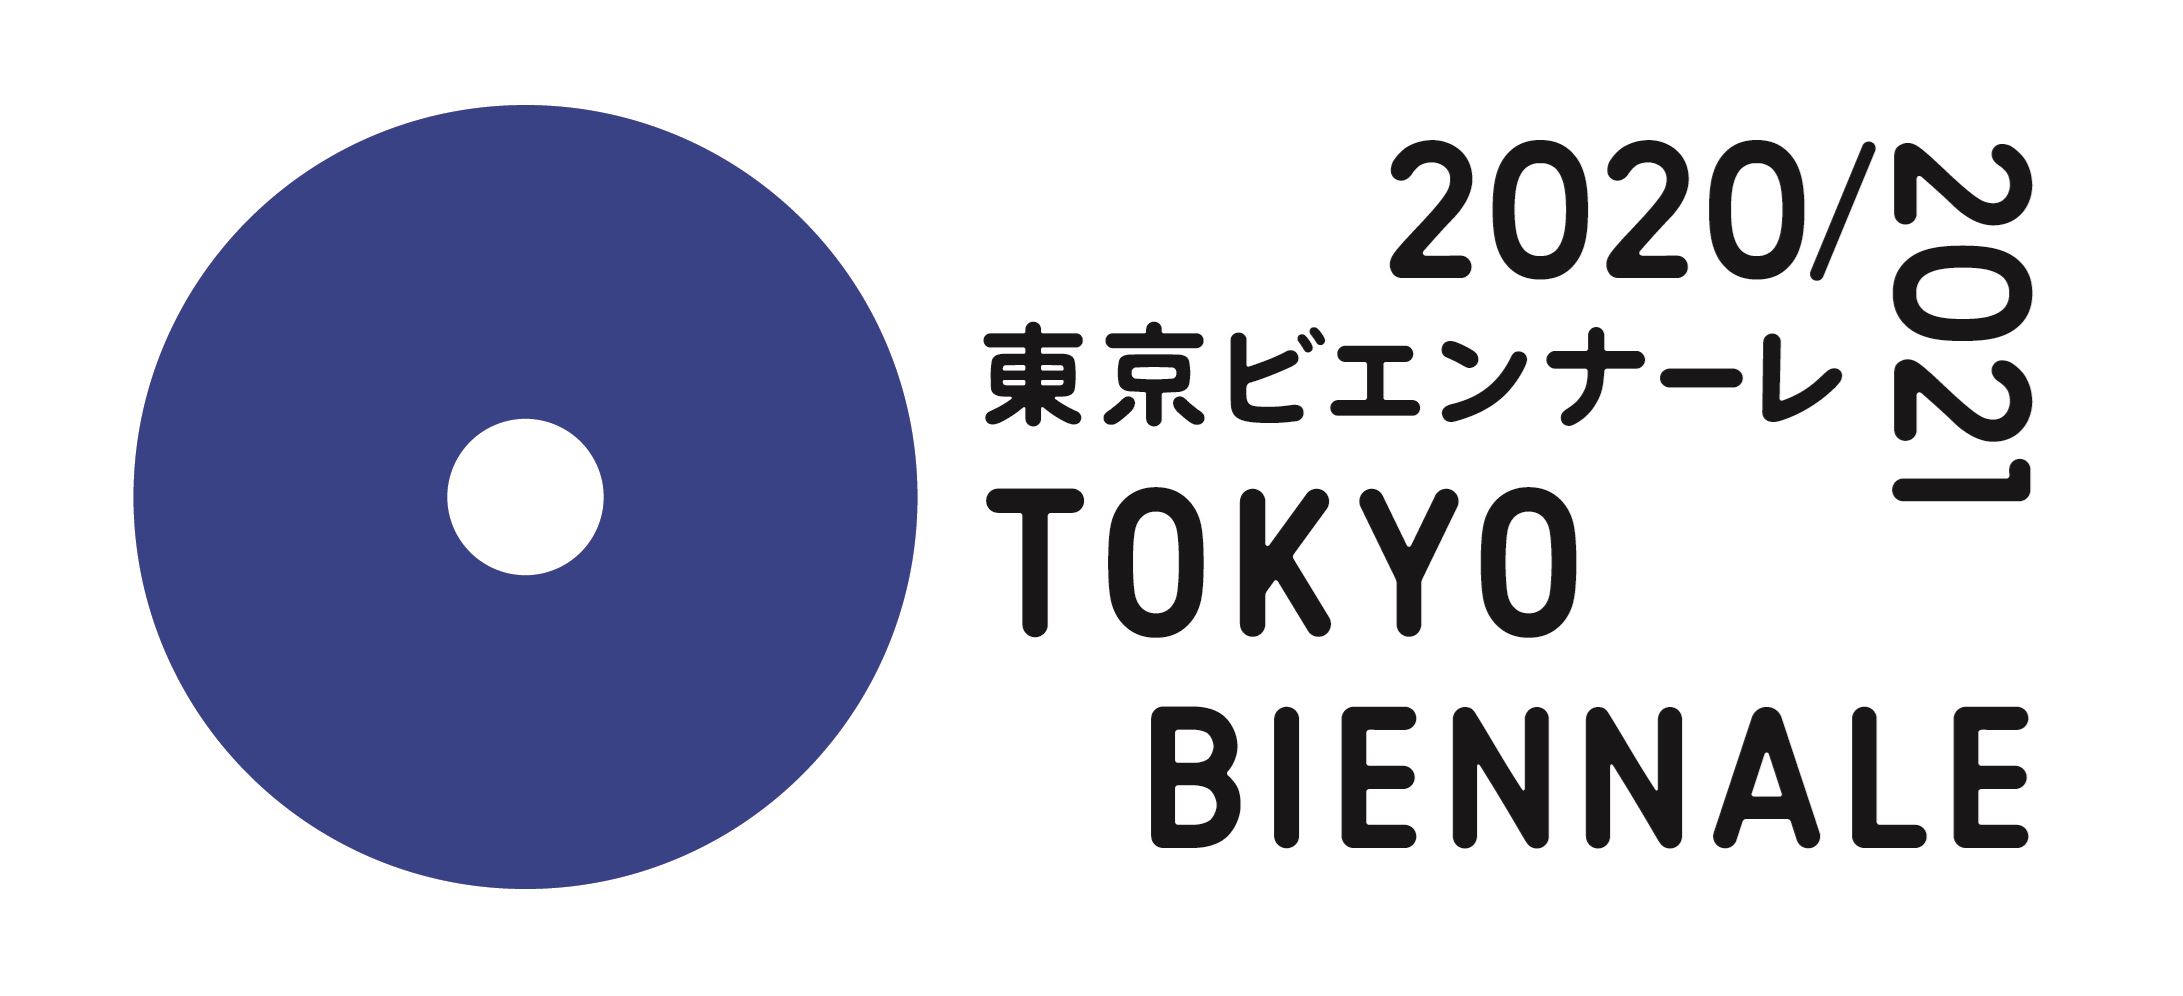 『東京ビエンナーレ2020/2021』